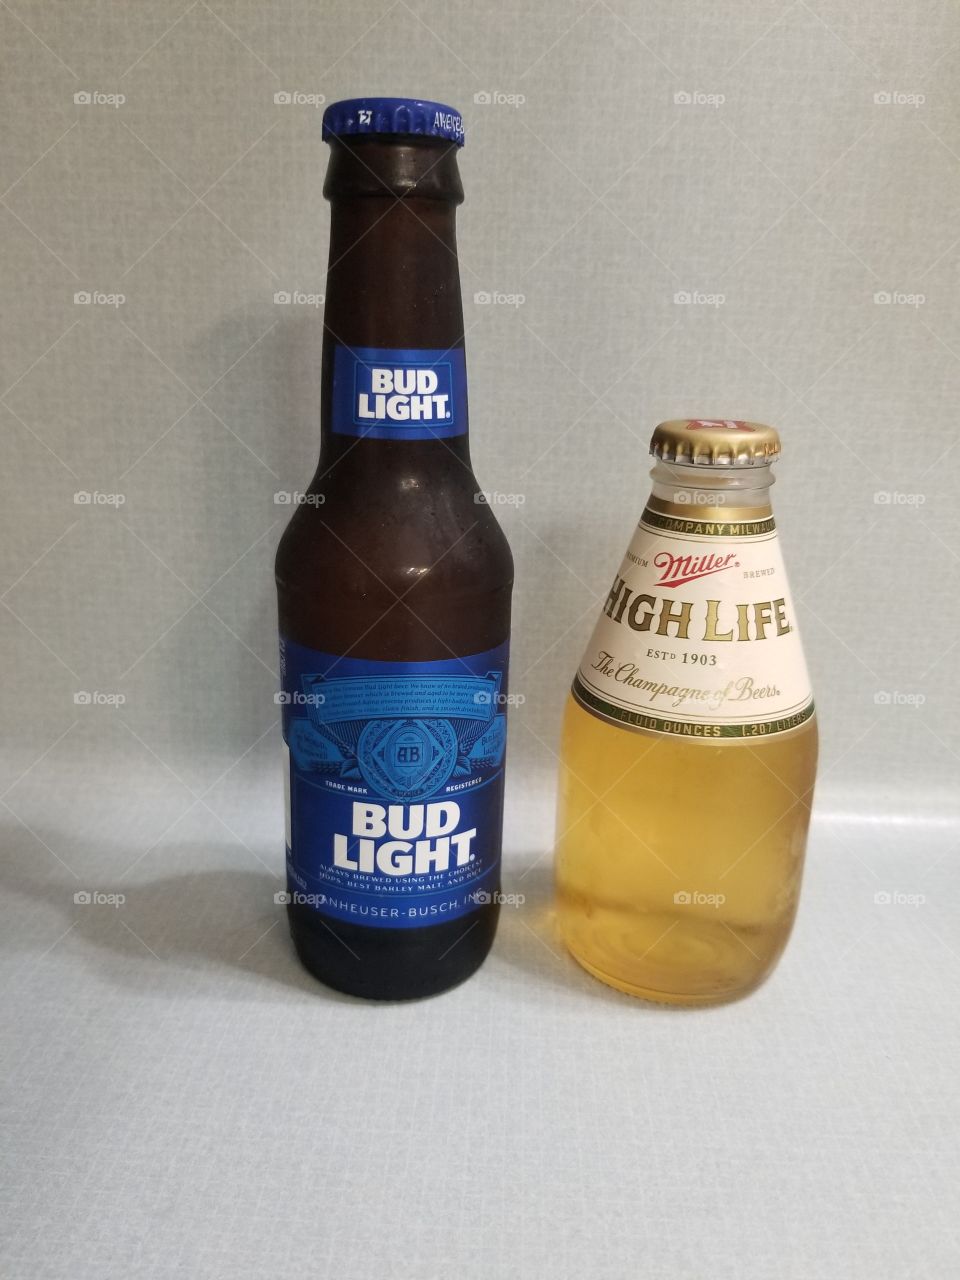 Bud light Miller High Life friends